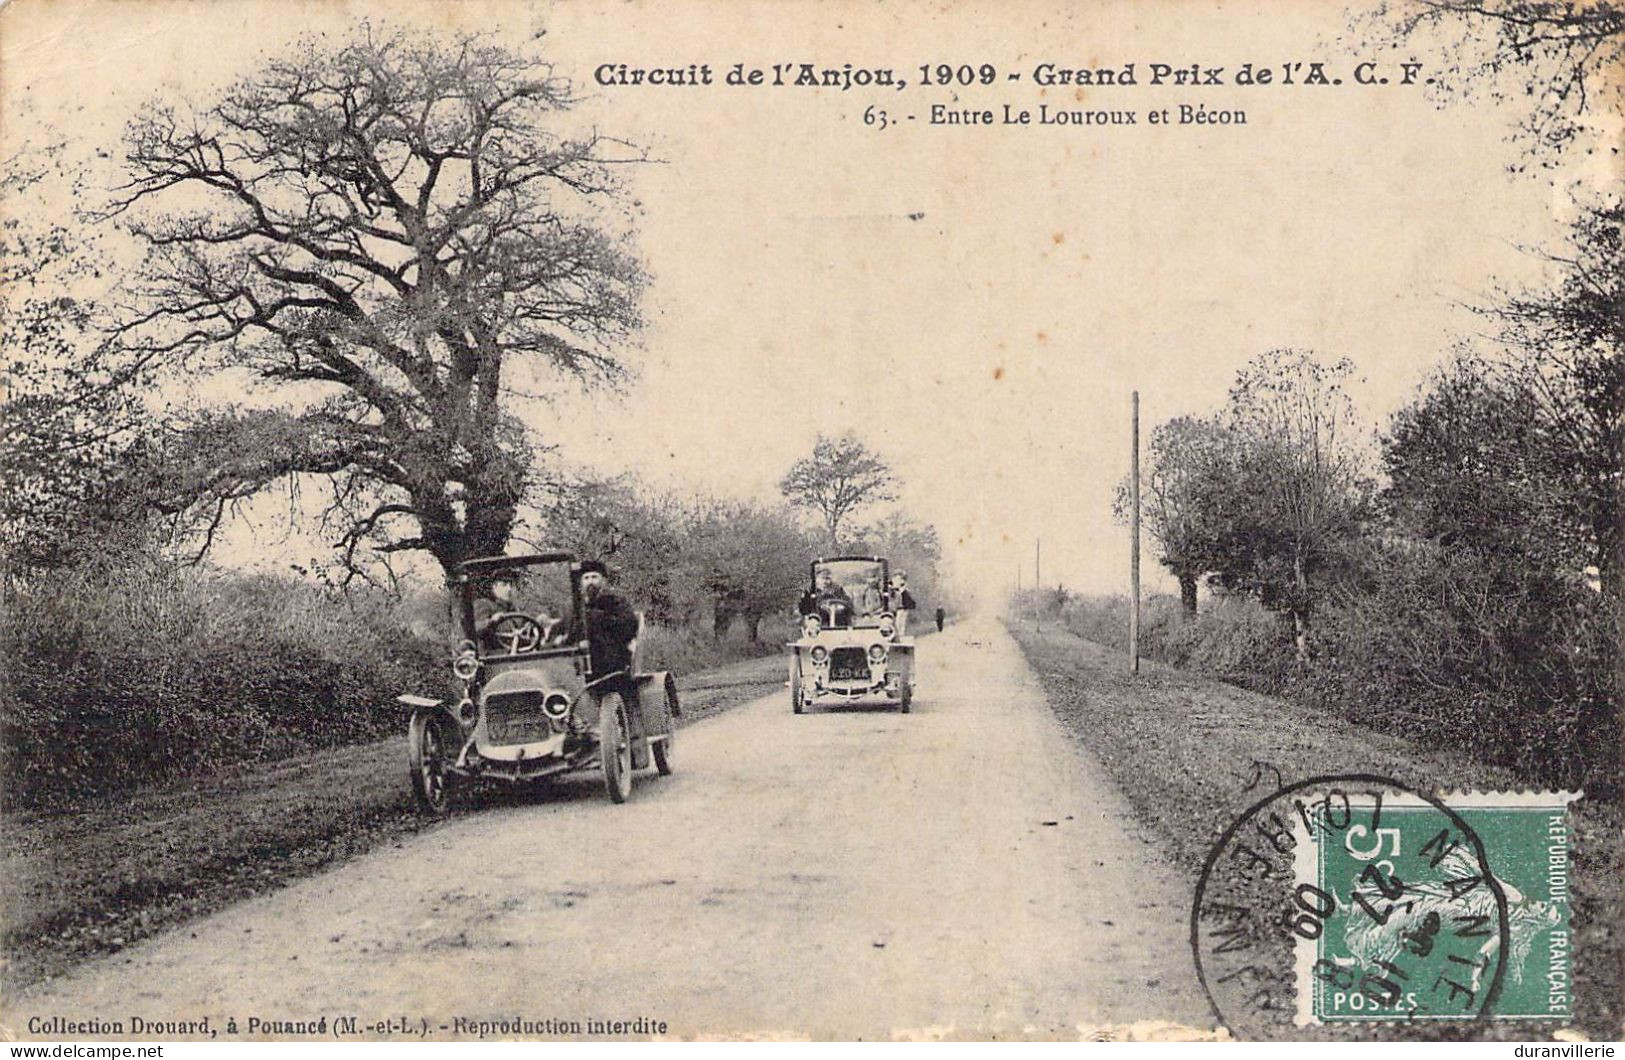 Course Automobile Circuit De L'Anjou 1909 (49) Grand Prix De L'A.C.F. Entre Le Louroux Et Bécon. Cachet Pharmacie Nantes - Grand Prix / F1